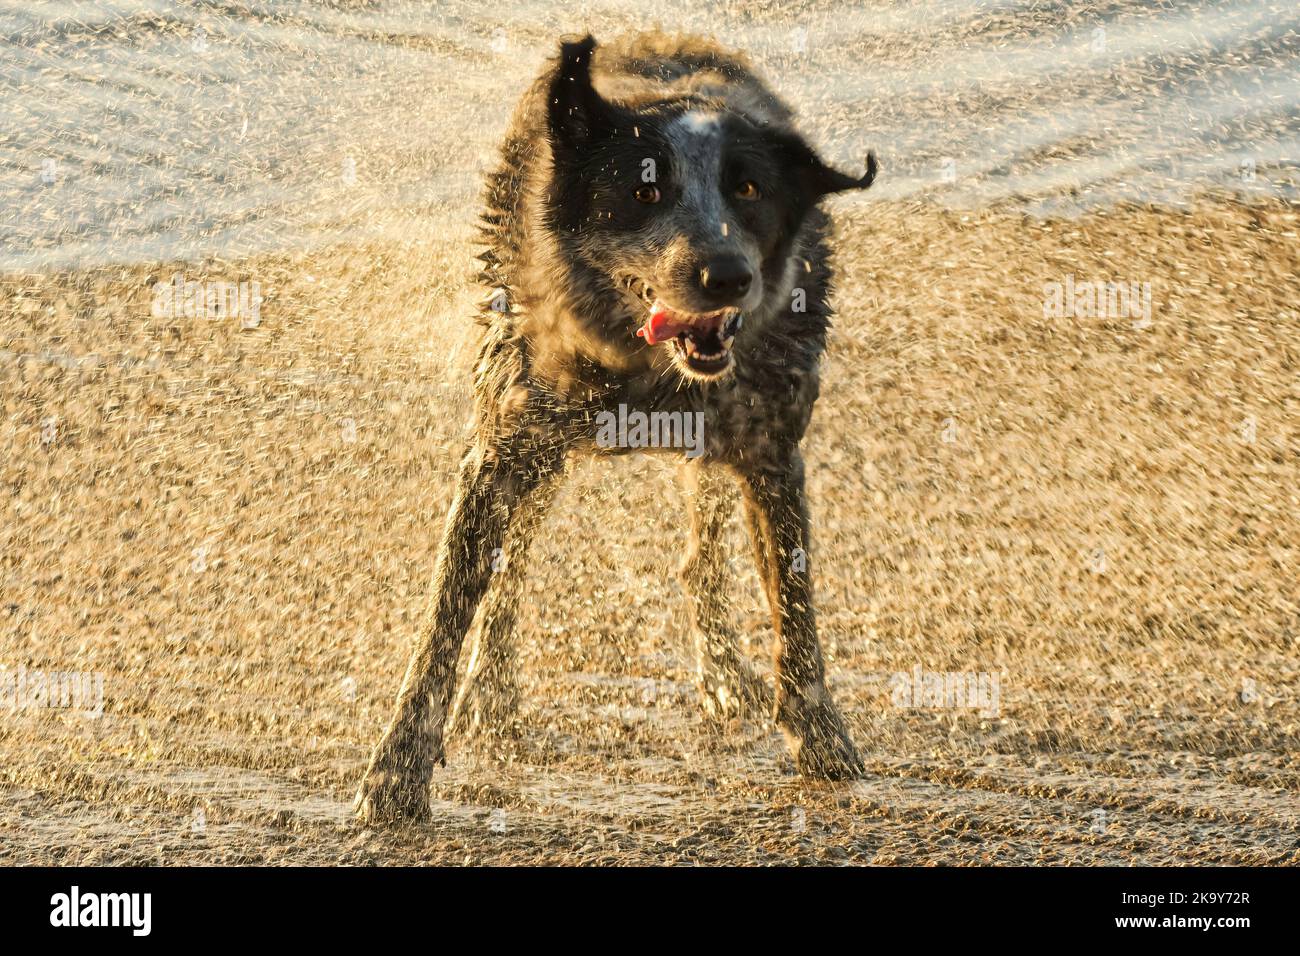 Schwarz-weiß getupfter Hund, der Wasser abschüttelt, hinten von untergehenden Sonnenstrahlen beleuchtet, wodurch ein Schleier aus goldenen Wassertropfen entsteht Stockfoto